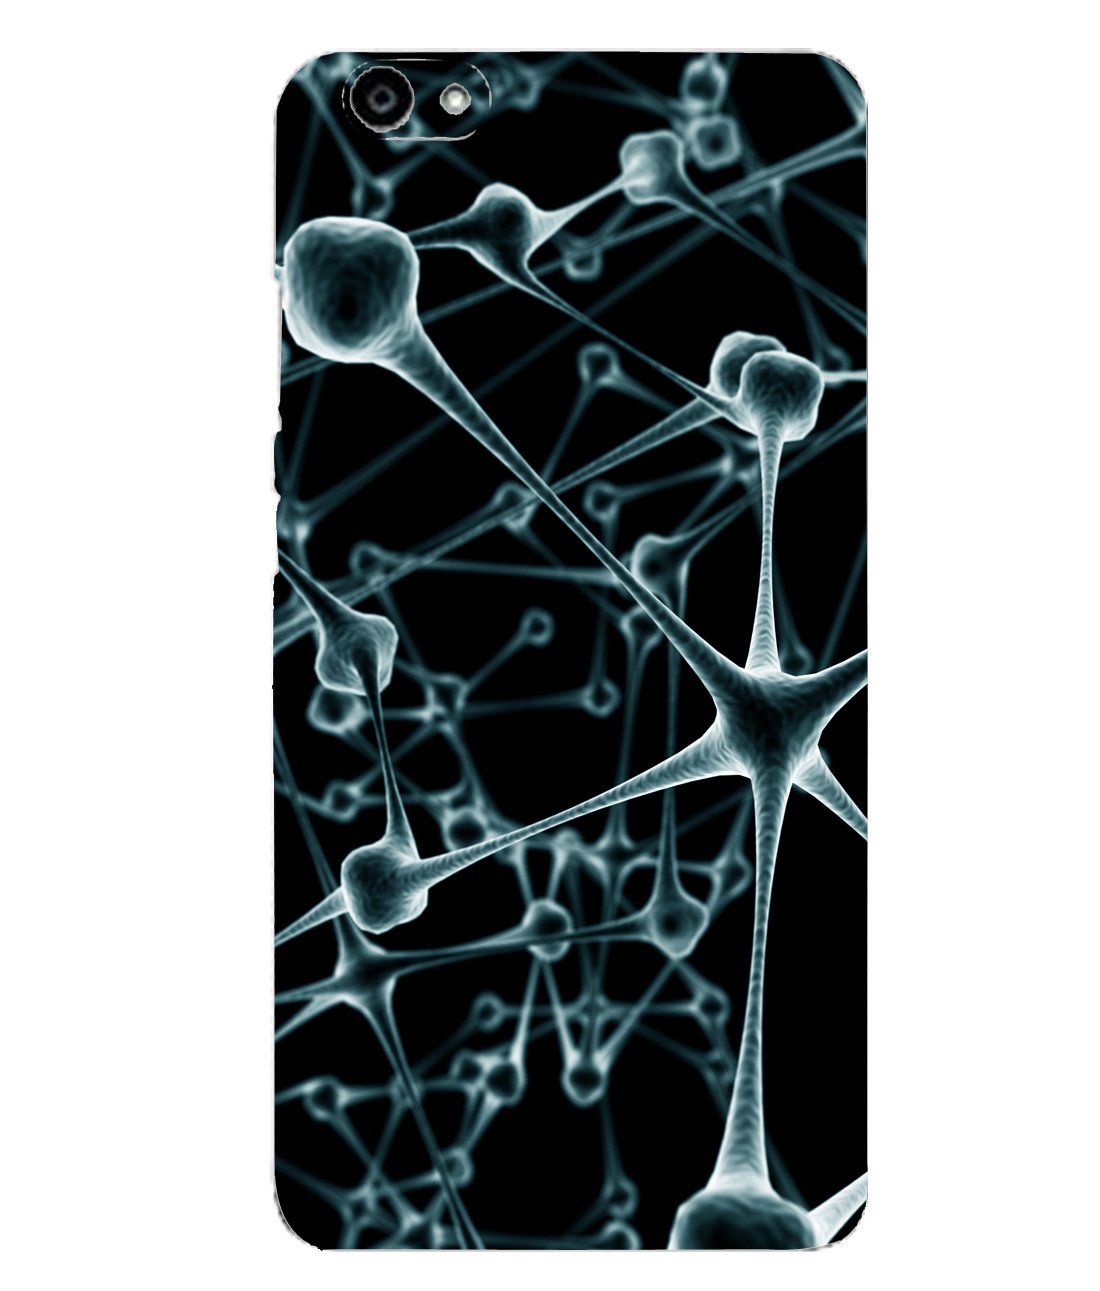 Csk Neuron Wallpaper Mobile Case Cover For Vivo V5 - Neurons Wallpaper Iphone , HD Wallpaper & Backgrounds